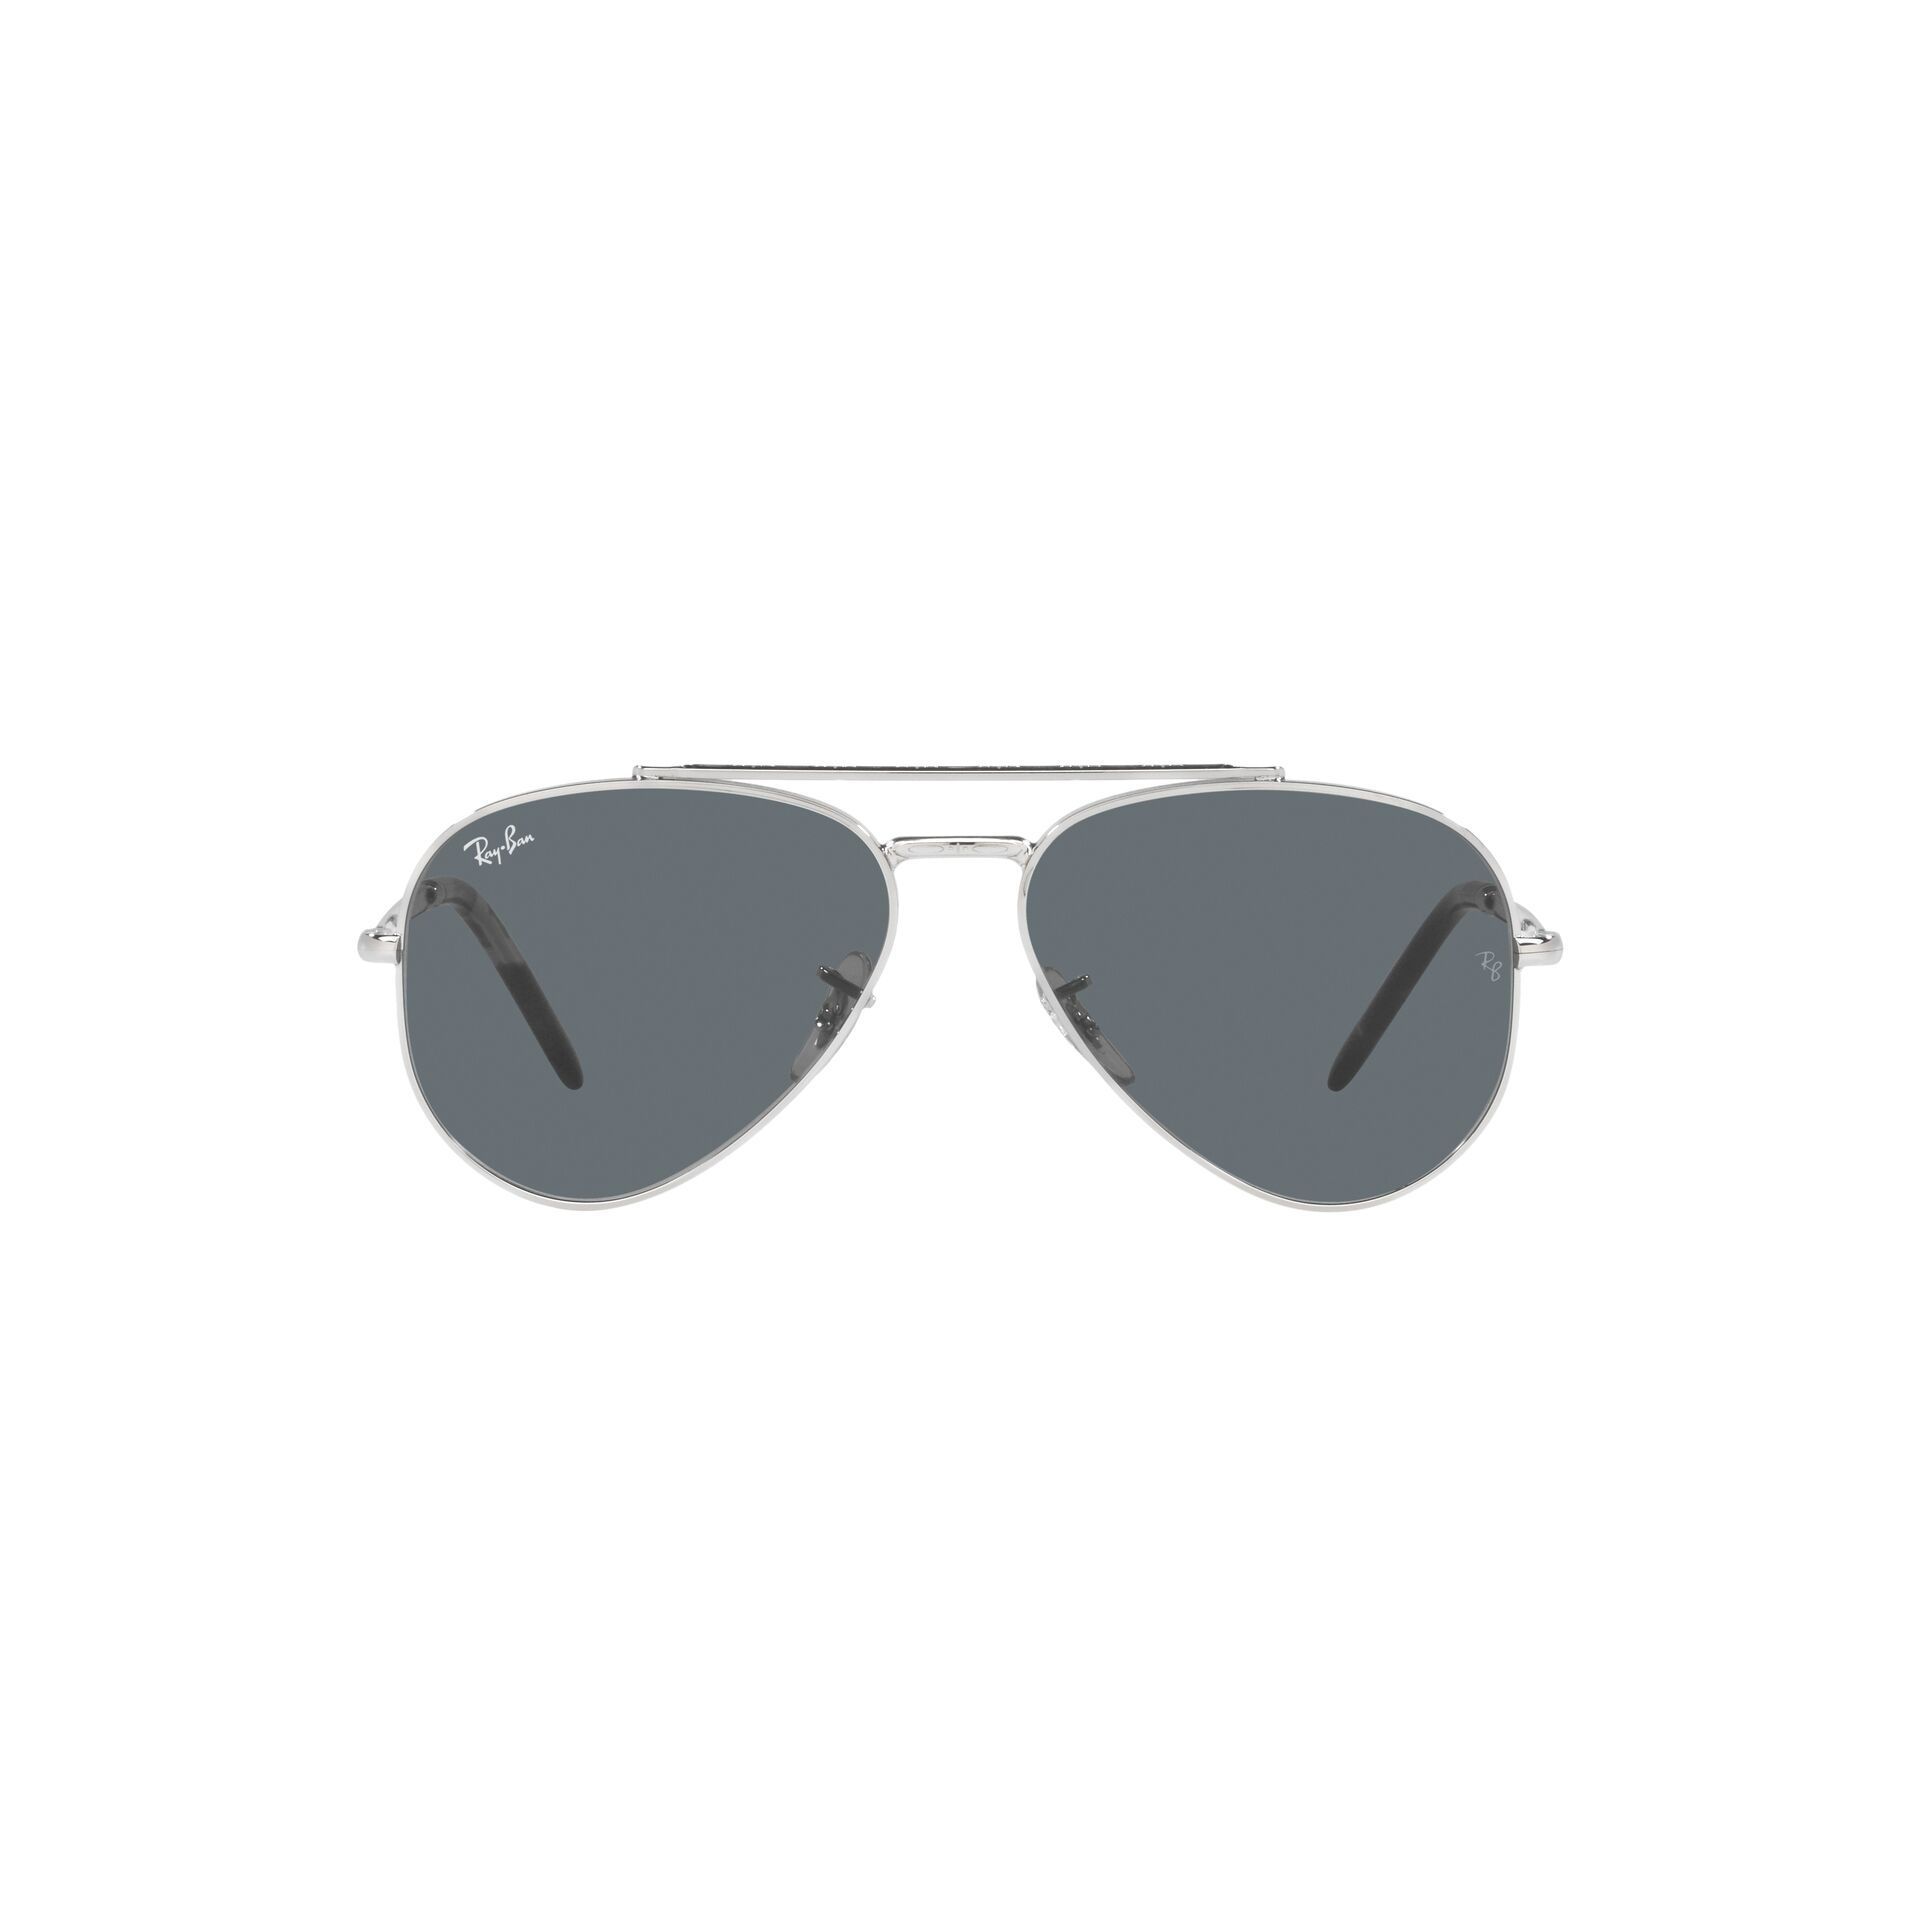 RB3625 Pilot Sunglasses 003 R5 - size 62